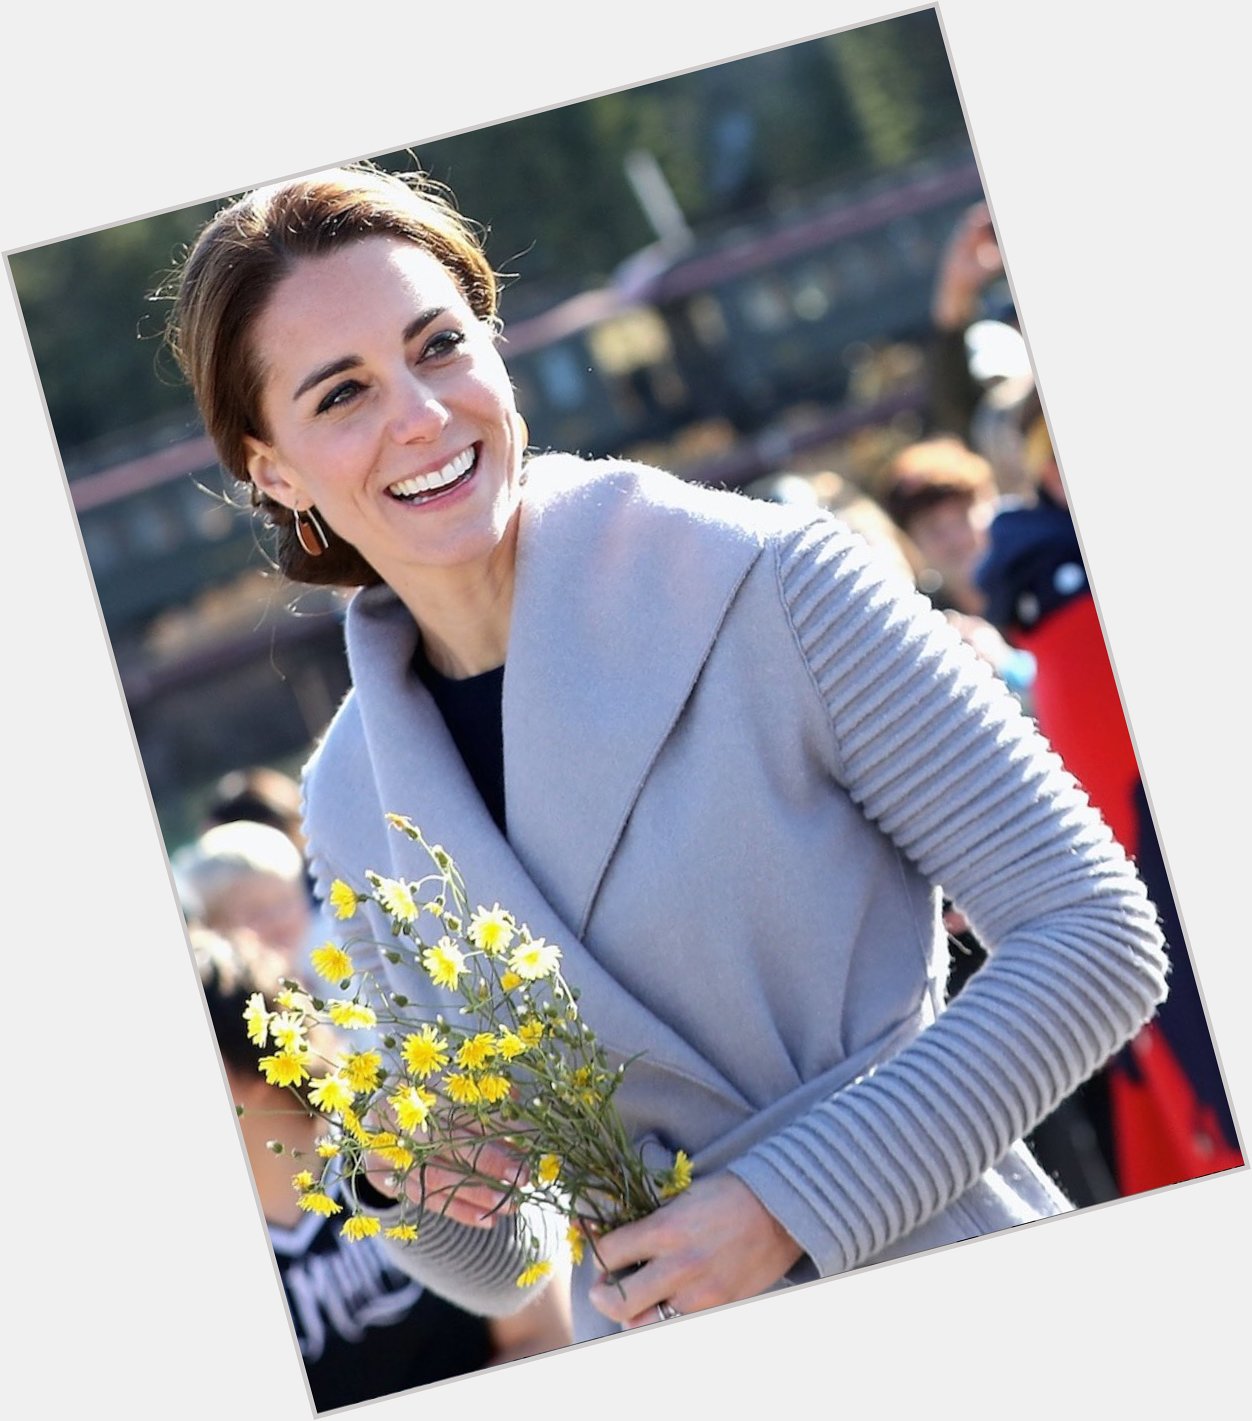 Happy birthday to the Duchess of Cambridge, Kate Middleton. 